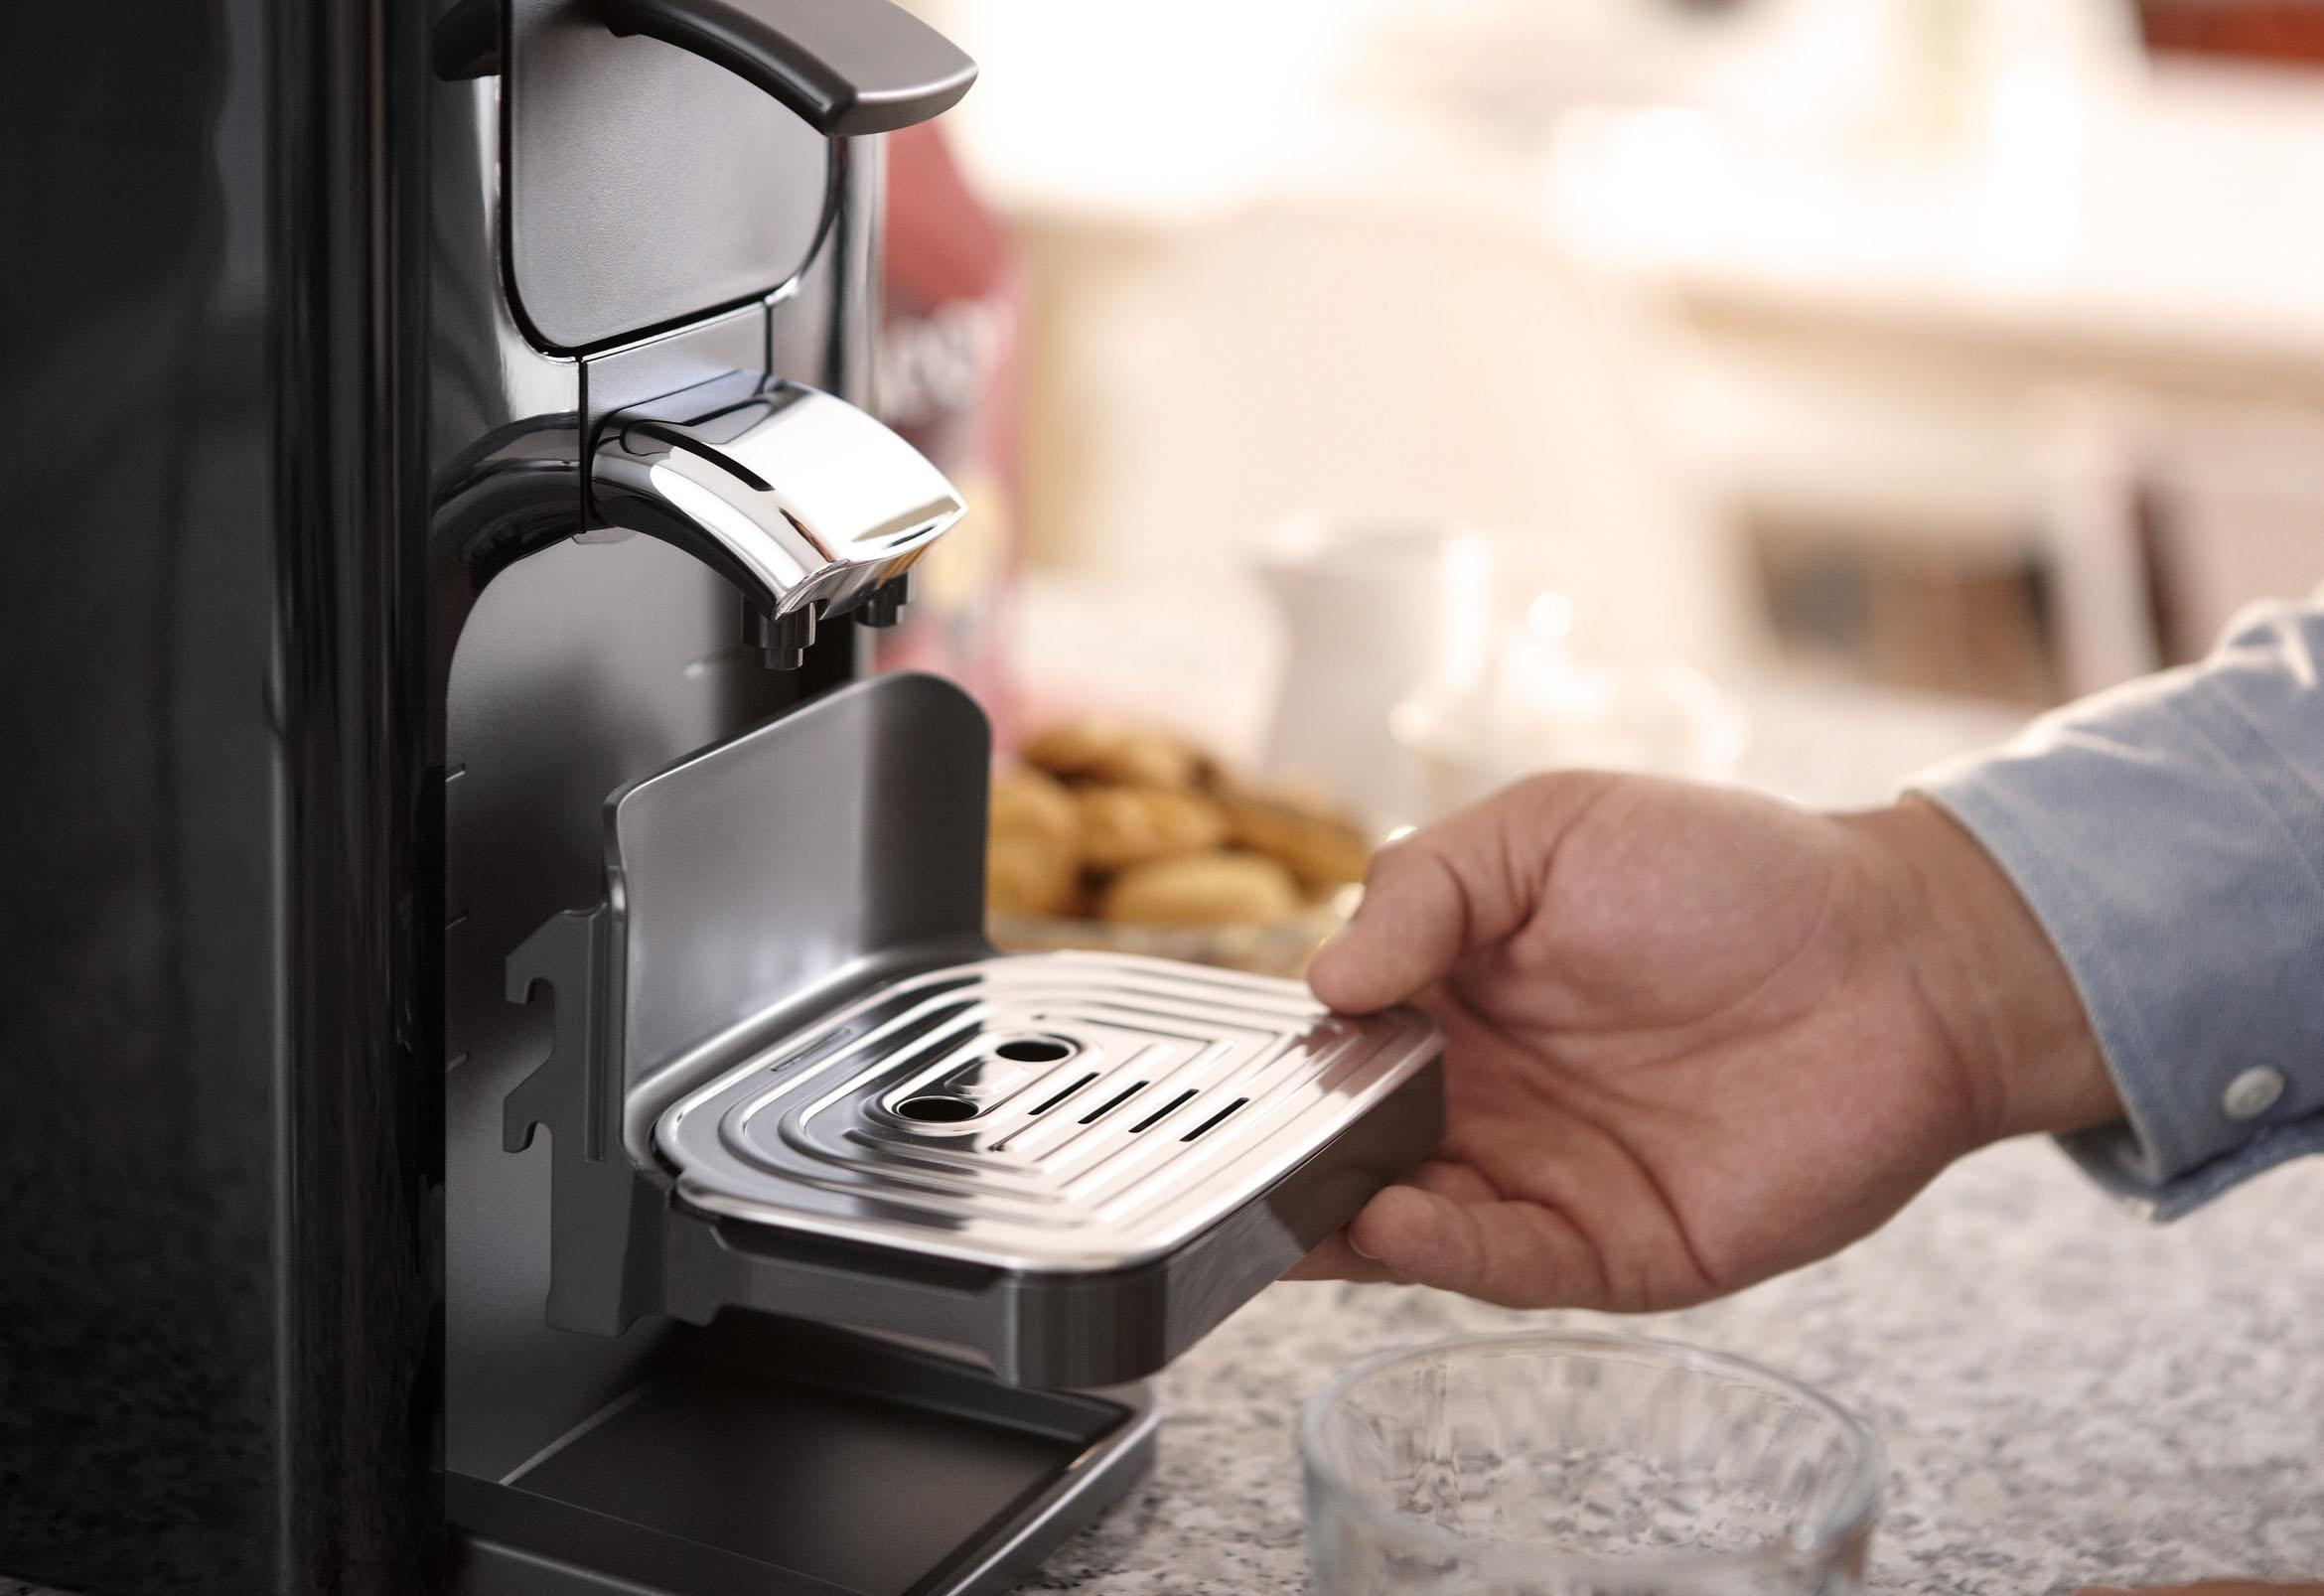 Philips Senseo Kaffeepadmaschine »SENSEO® Quadrante HD7865/60«, inkl. Gratis -Zugaben im Wert von 23,90 UVP jetzt im OTTO Online Shop